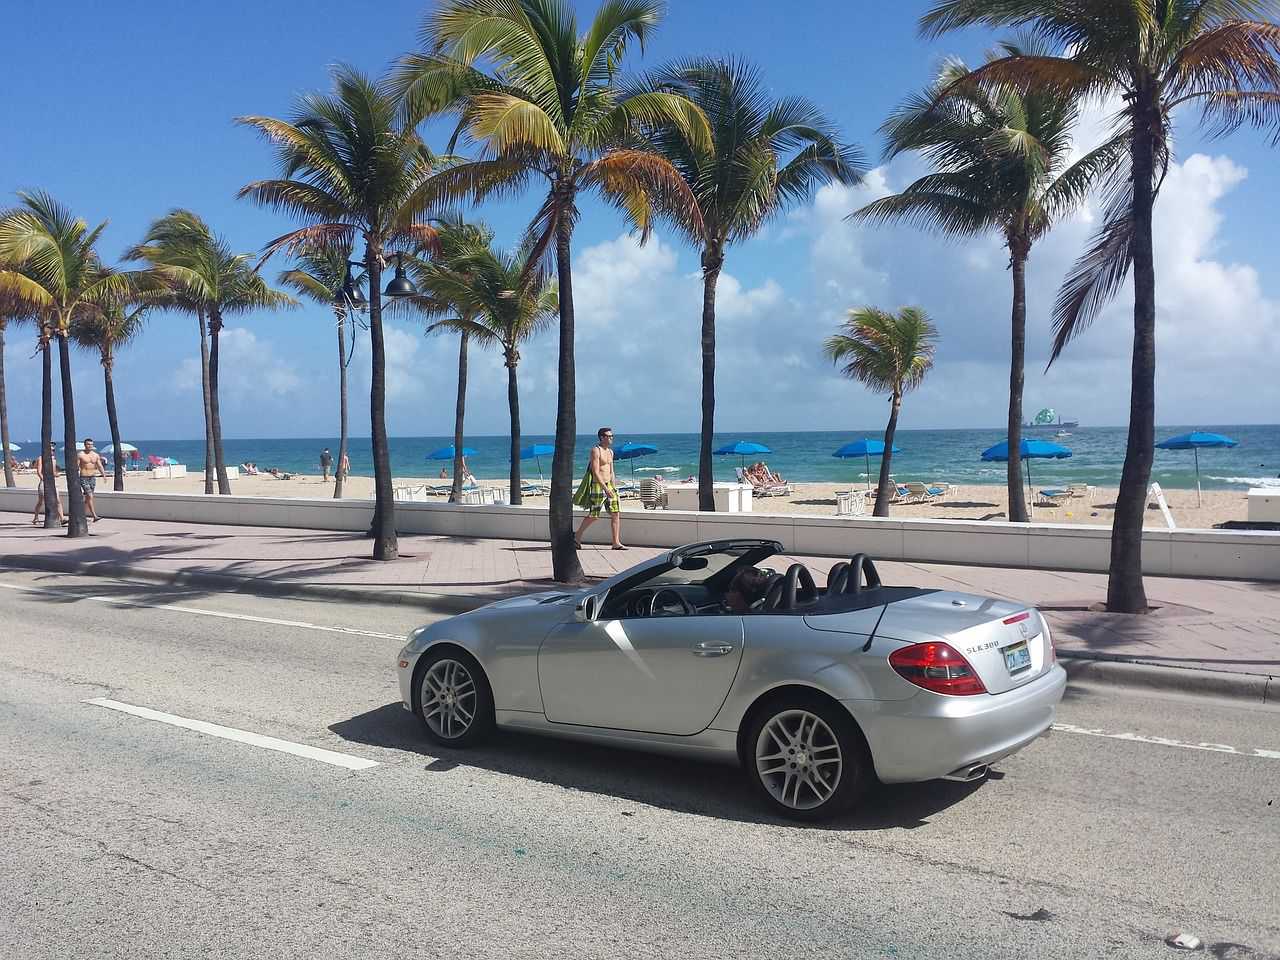 Miami beach, Florida